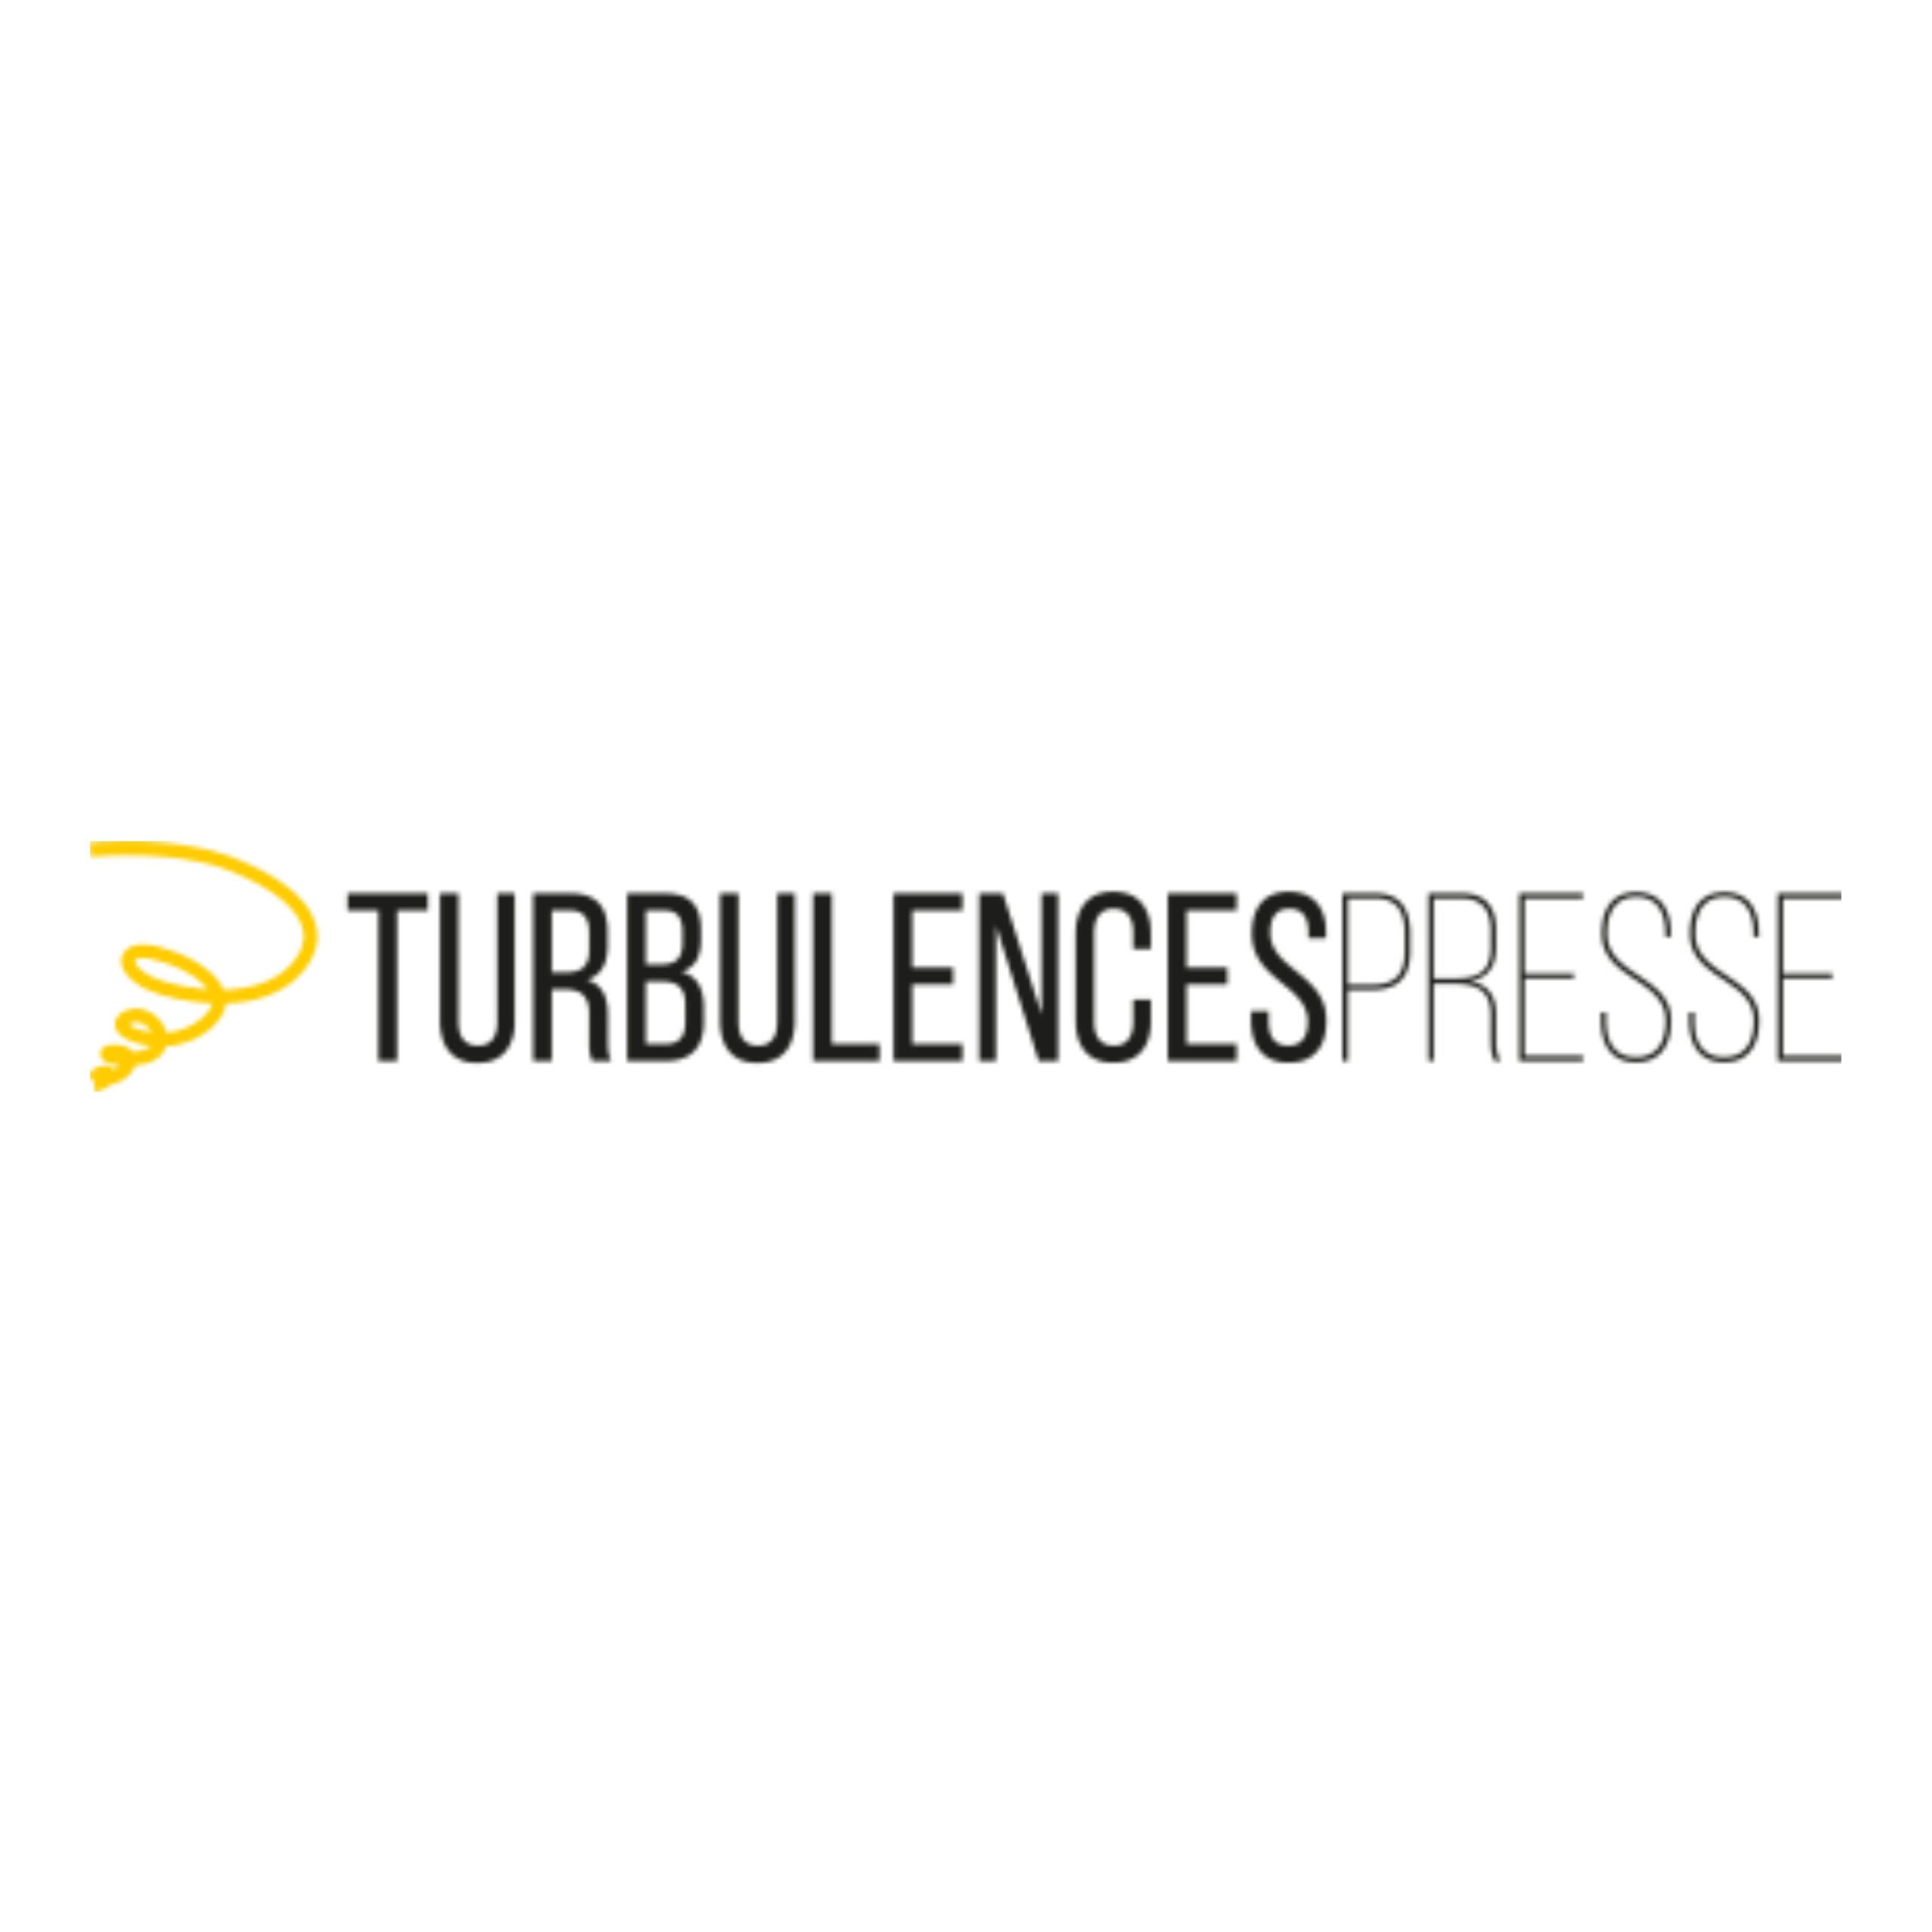 turbulence presse